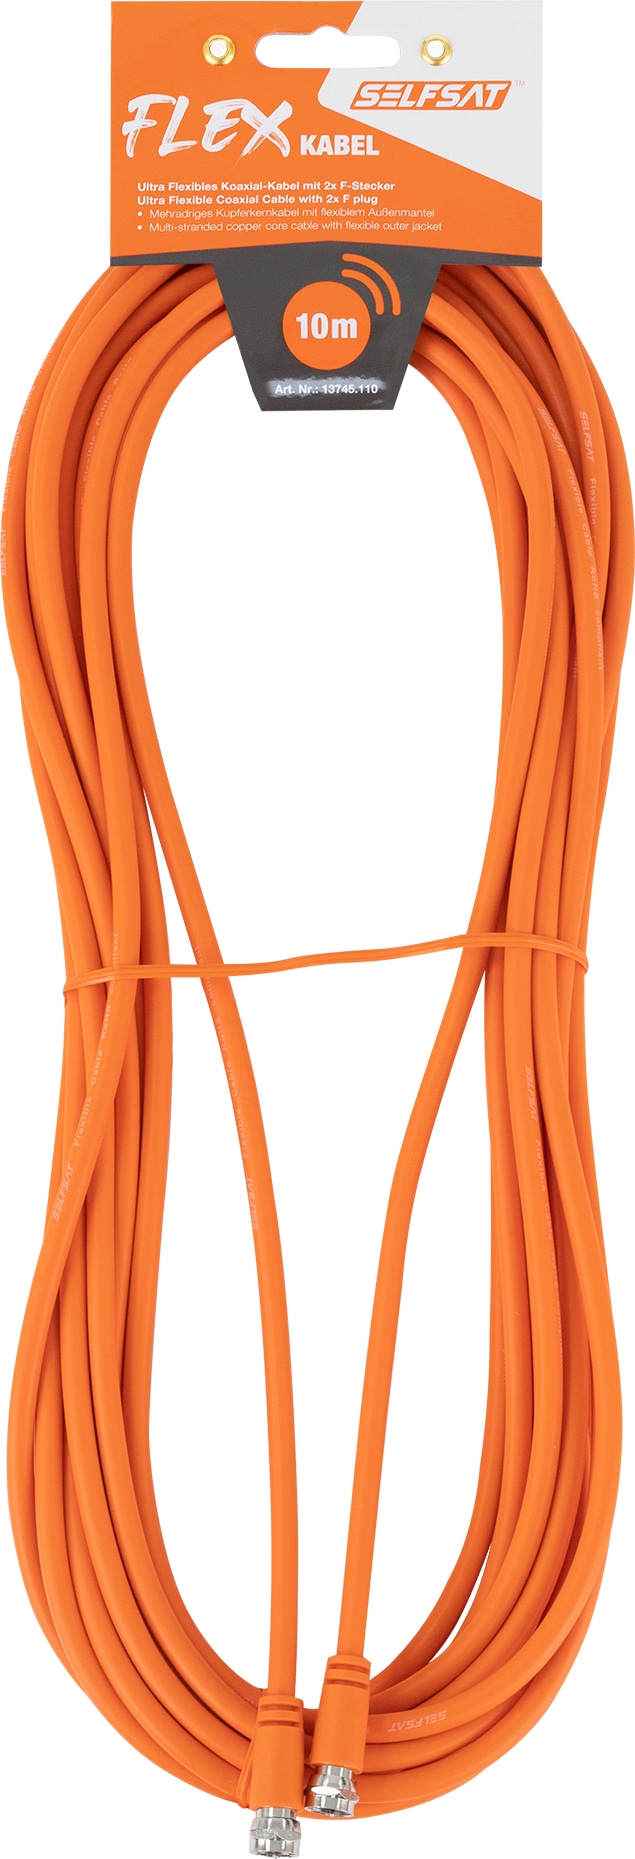 SELFSAT Antennenanschlusskabel Flex 10 m, orange